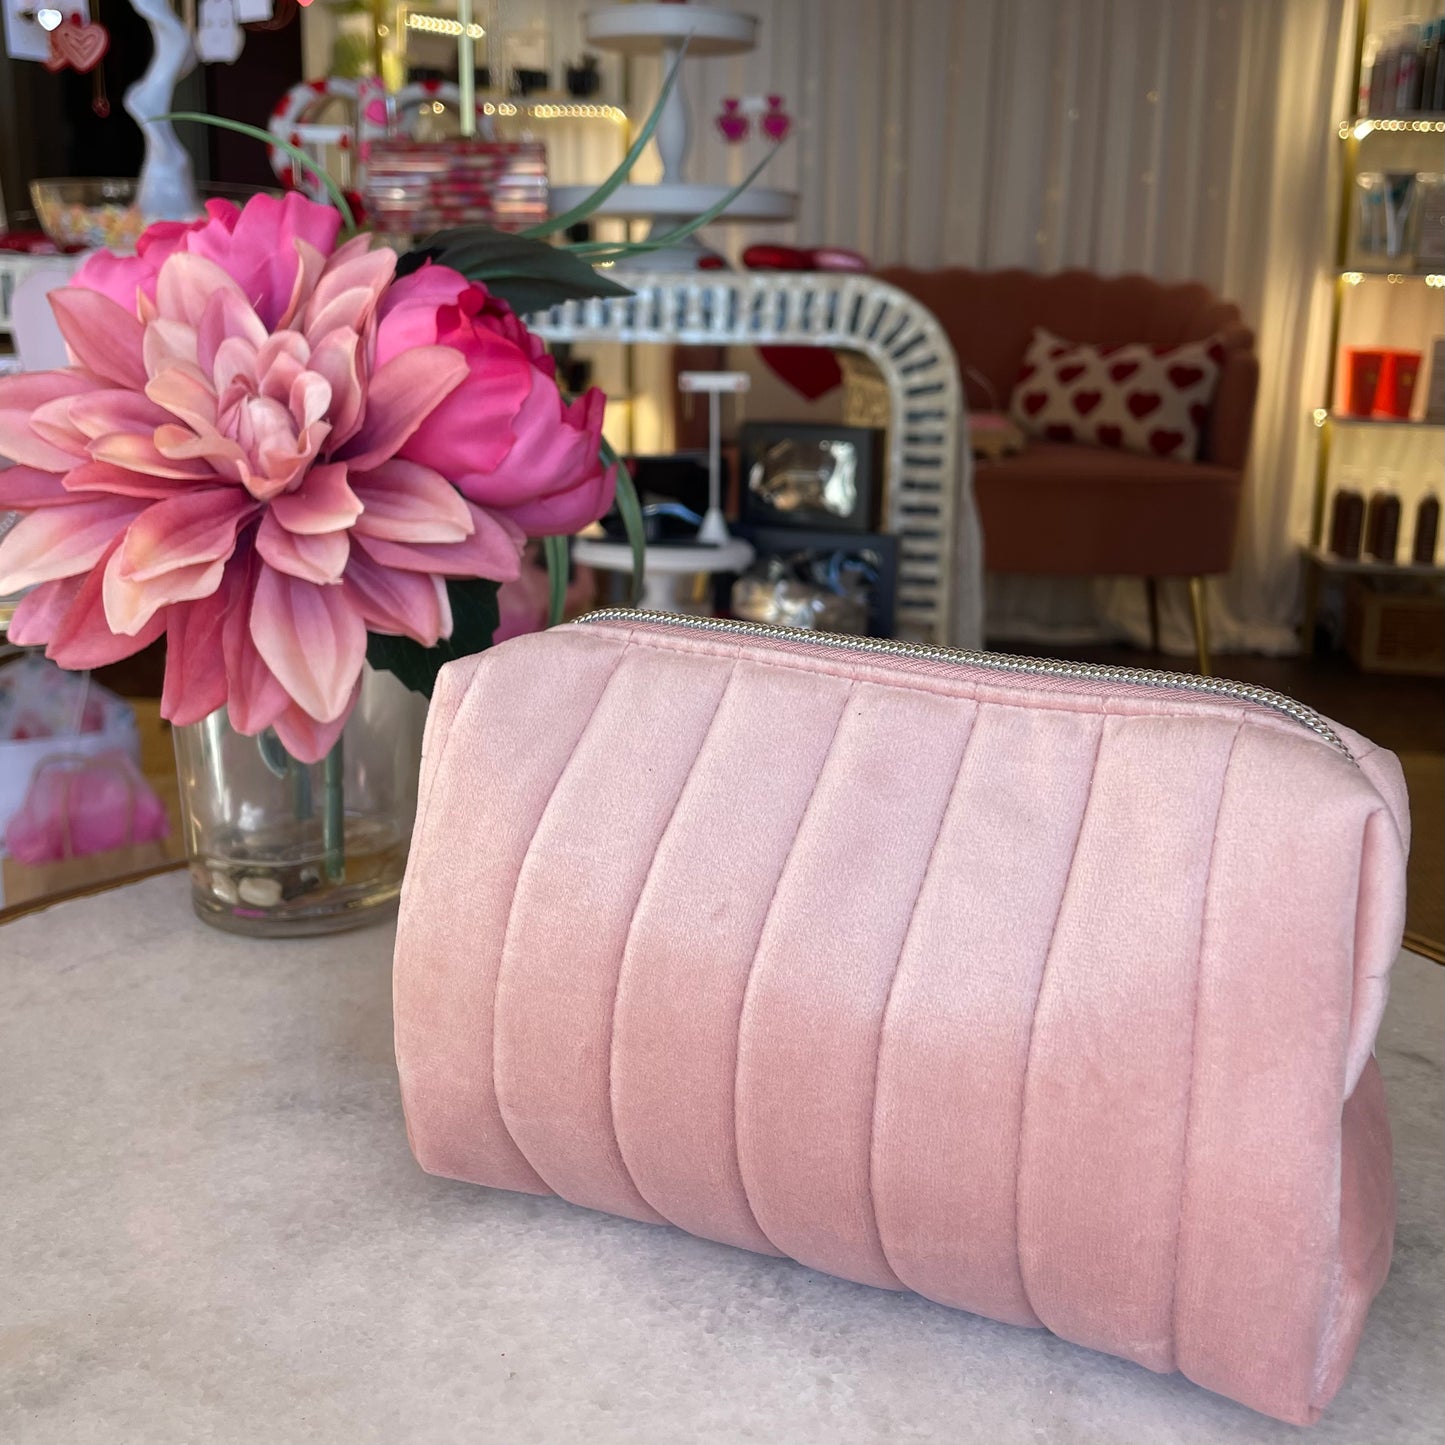 Plush Pink Makeup Bag